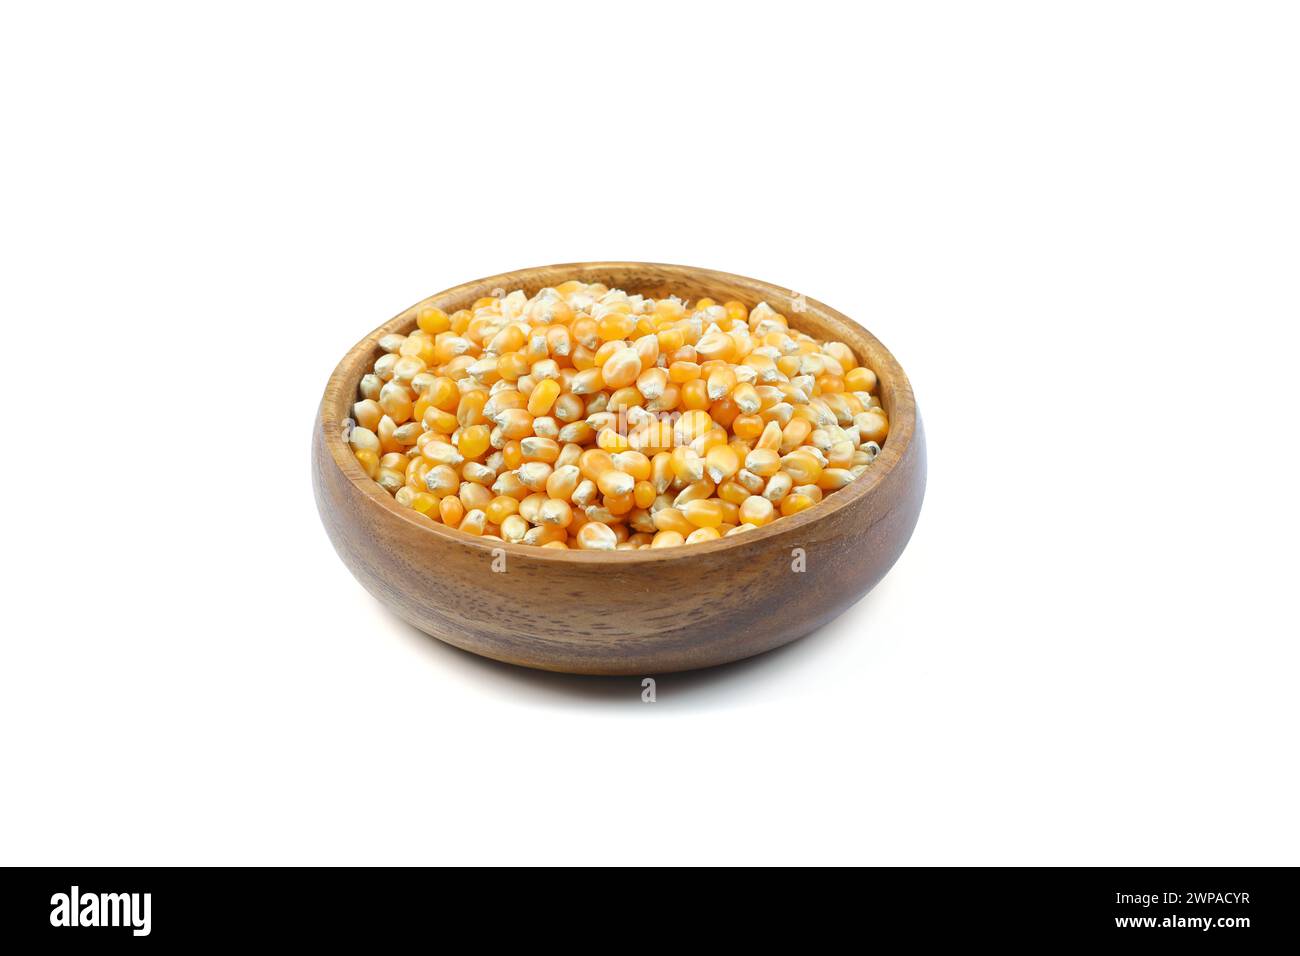 Pop-corn non éclaté dans un bol en bois sur fond blanc. Type de maïs qui se dilate à partir du grain et gonfle lorsqu'il est chauffé. Graines jaunes, comestibles, crues Banque D'Images